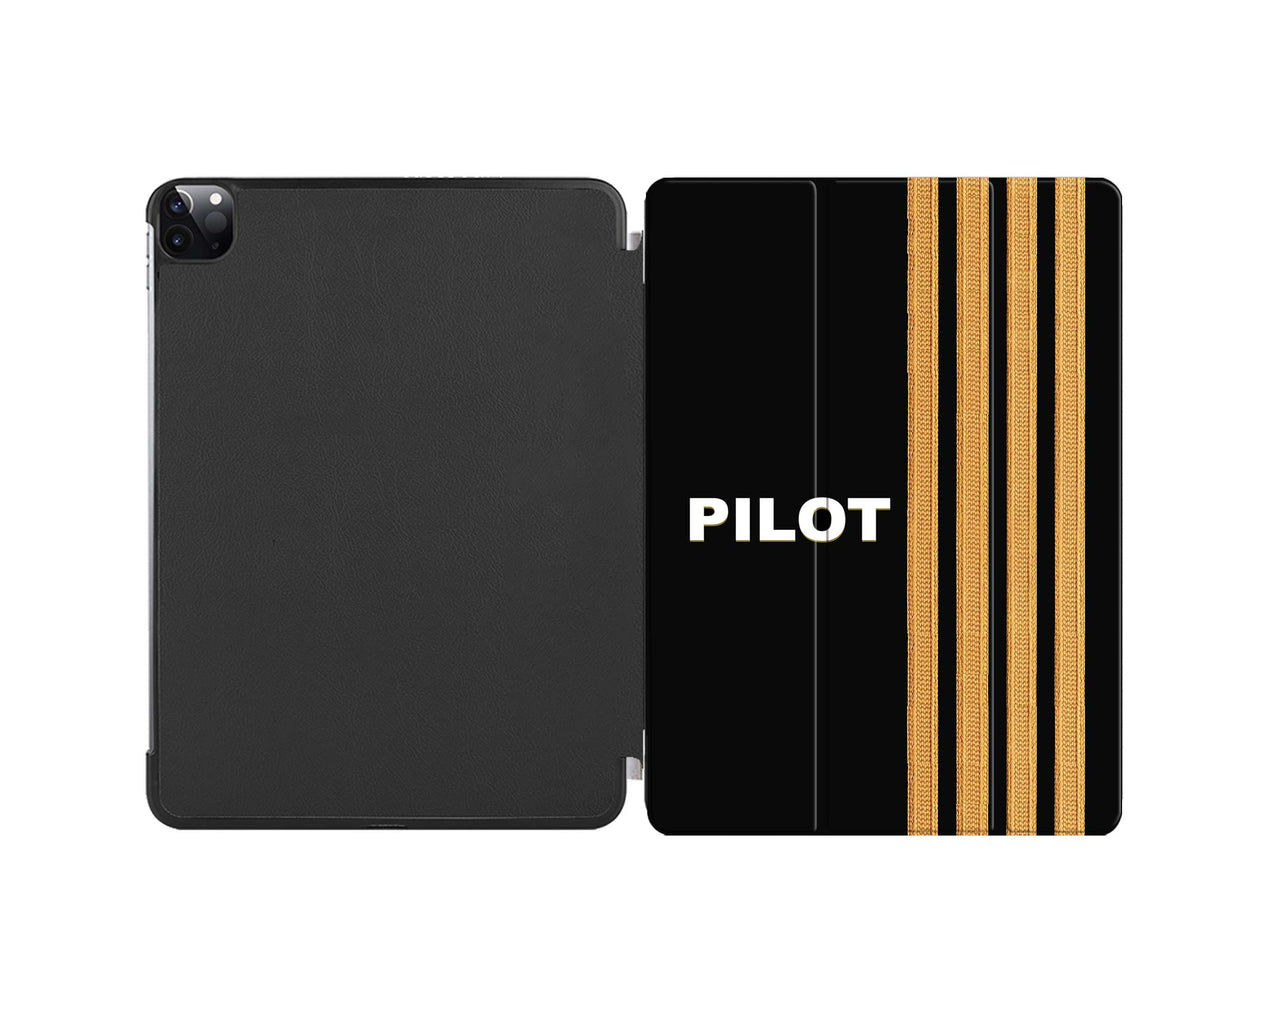 Pilot & Epaulettes (4 Lines) Designed iPad Cases